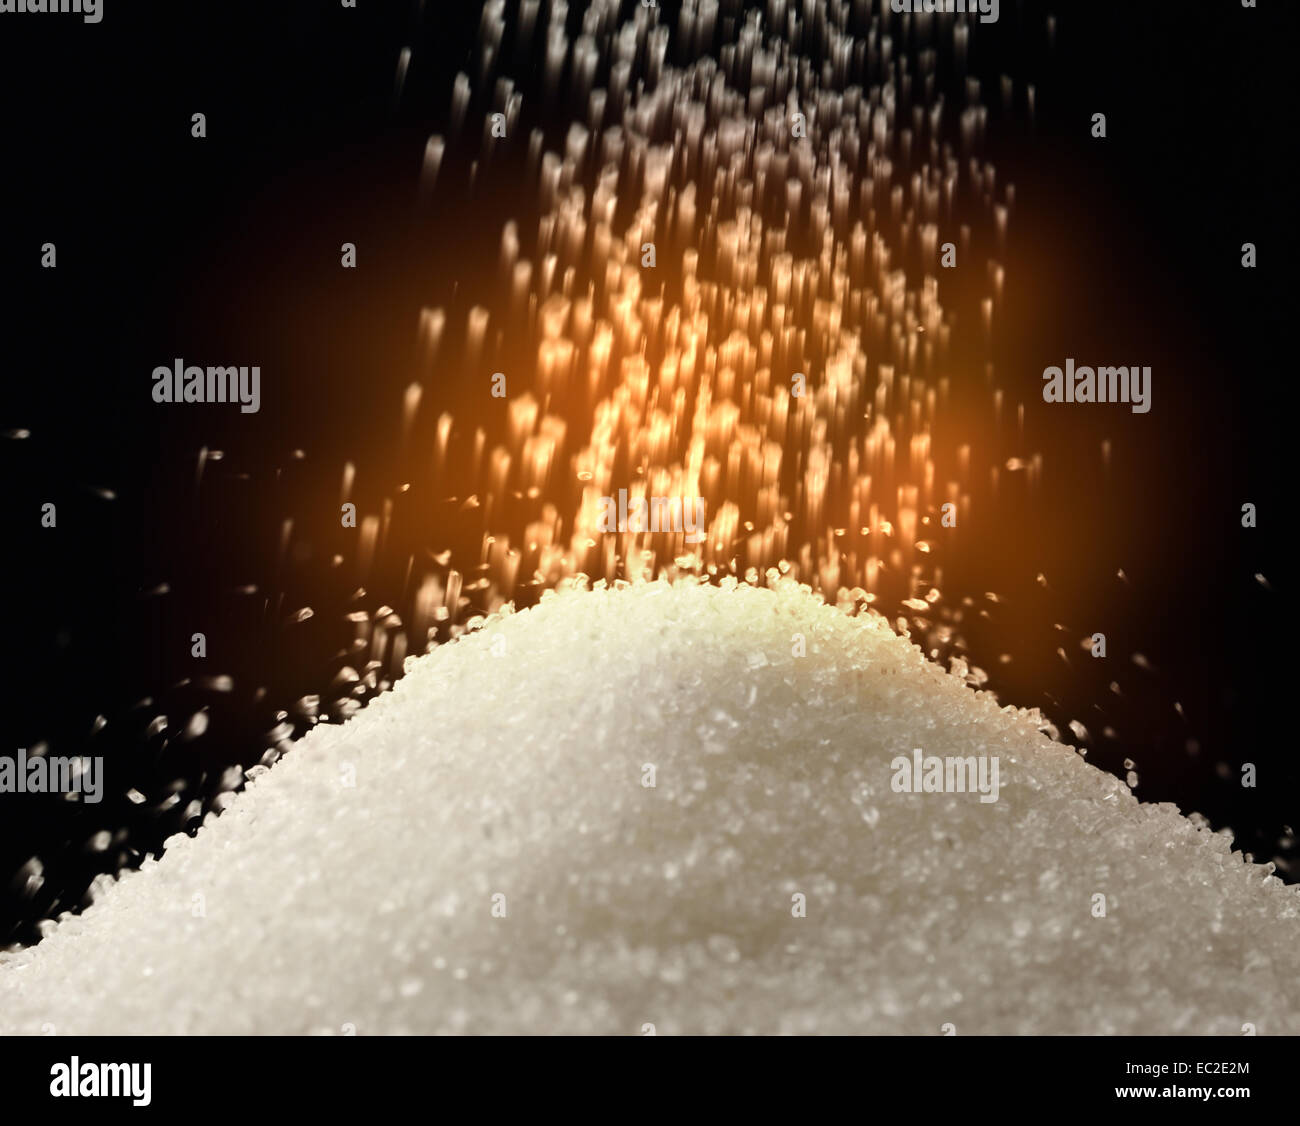 Flow of white sugar on black Stock Photo